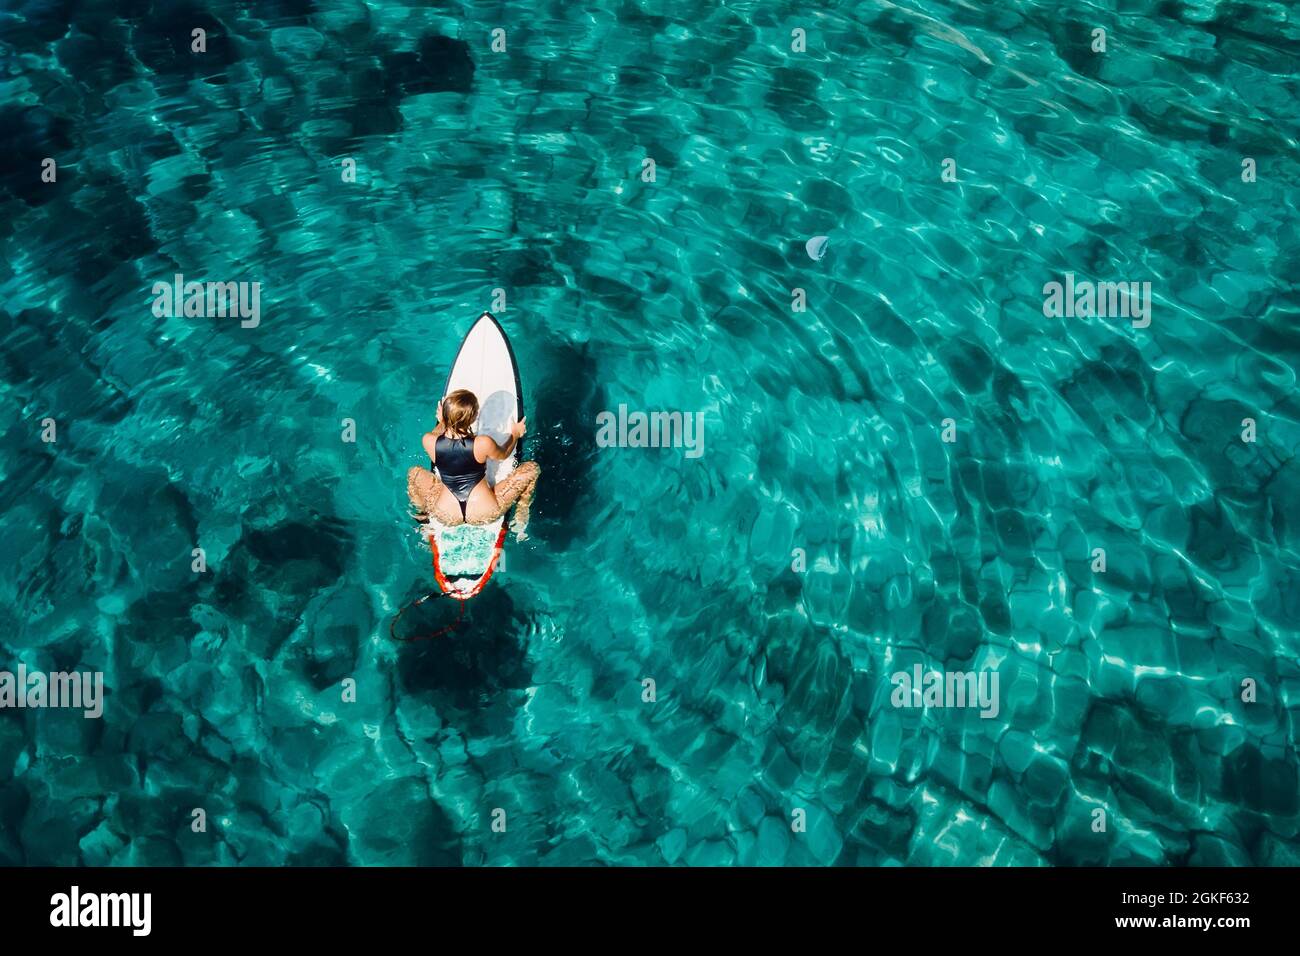 Une fille surfeuse assise sur une planche de surf dans un océan turquoise transparent. Vue aérienne avec une surfeuse Banque D'Images